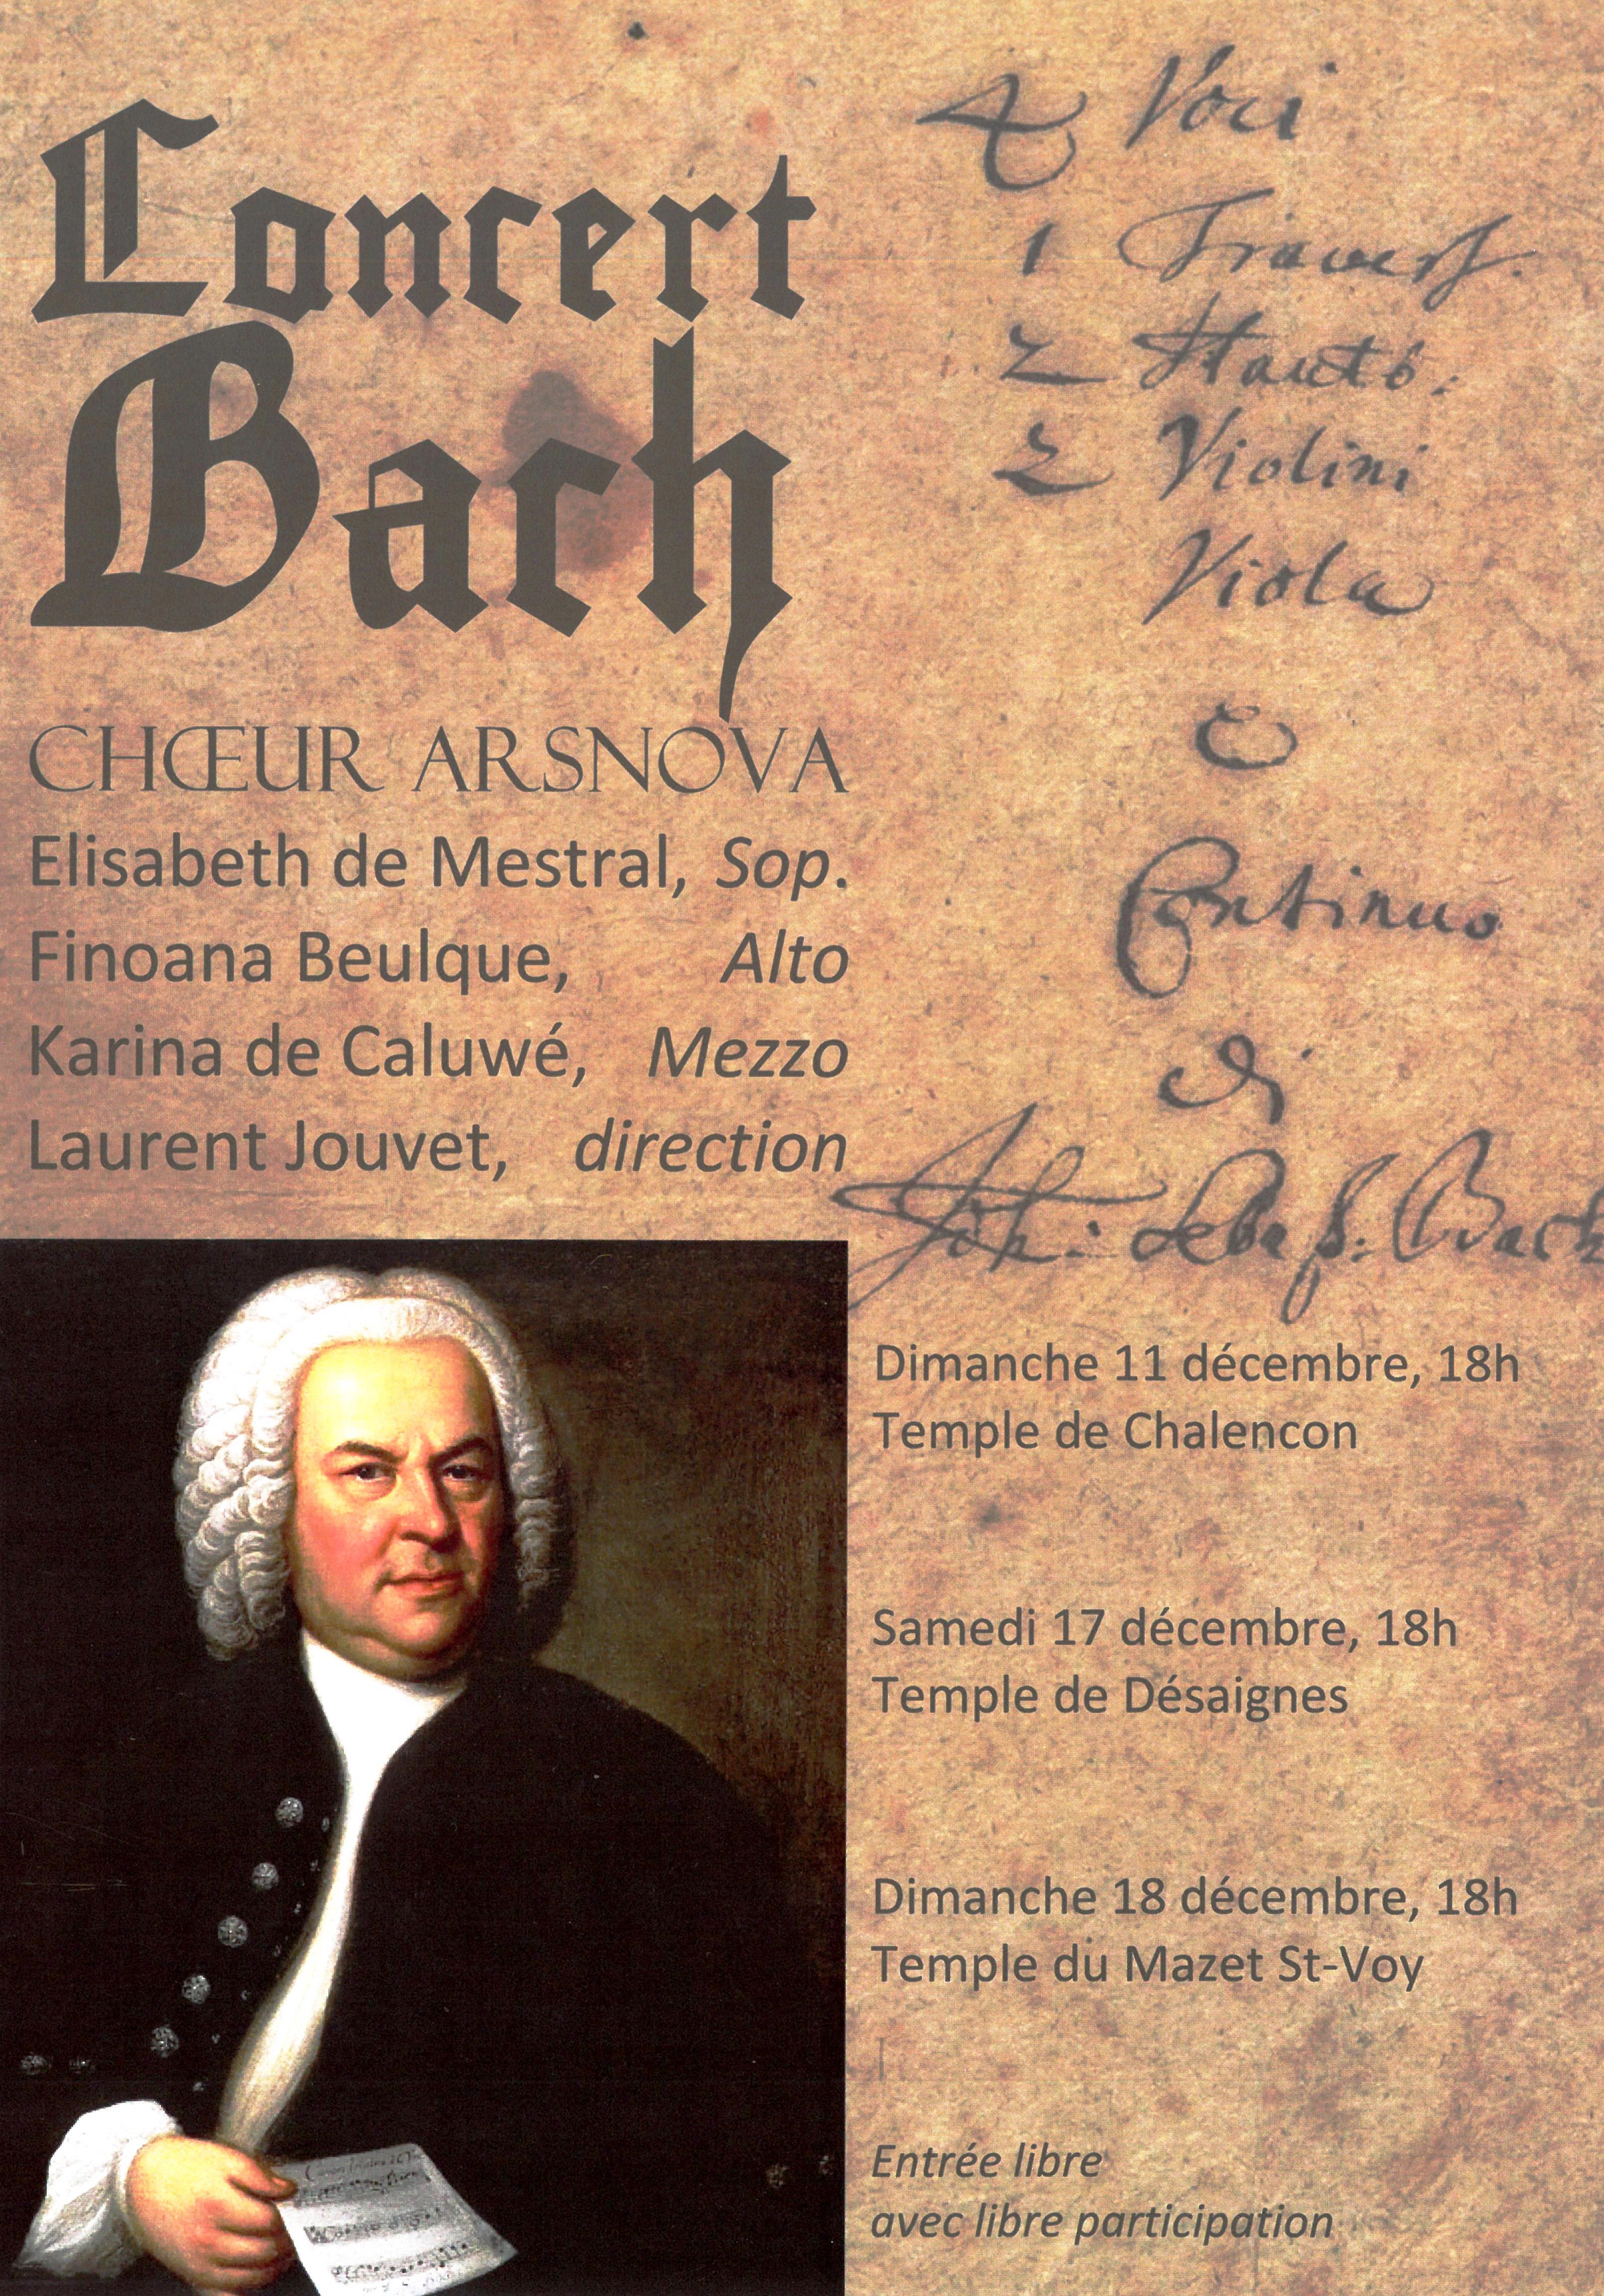 Alle leuke evenementen! : Concert du chœur ArsNova autour d’œuvres de Jean-Sébastien Bach